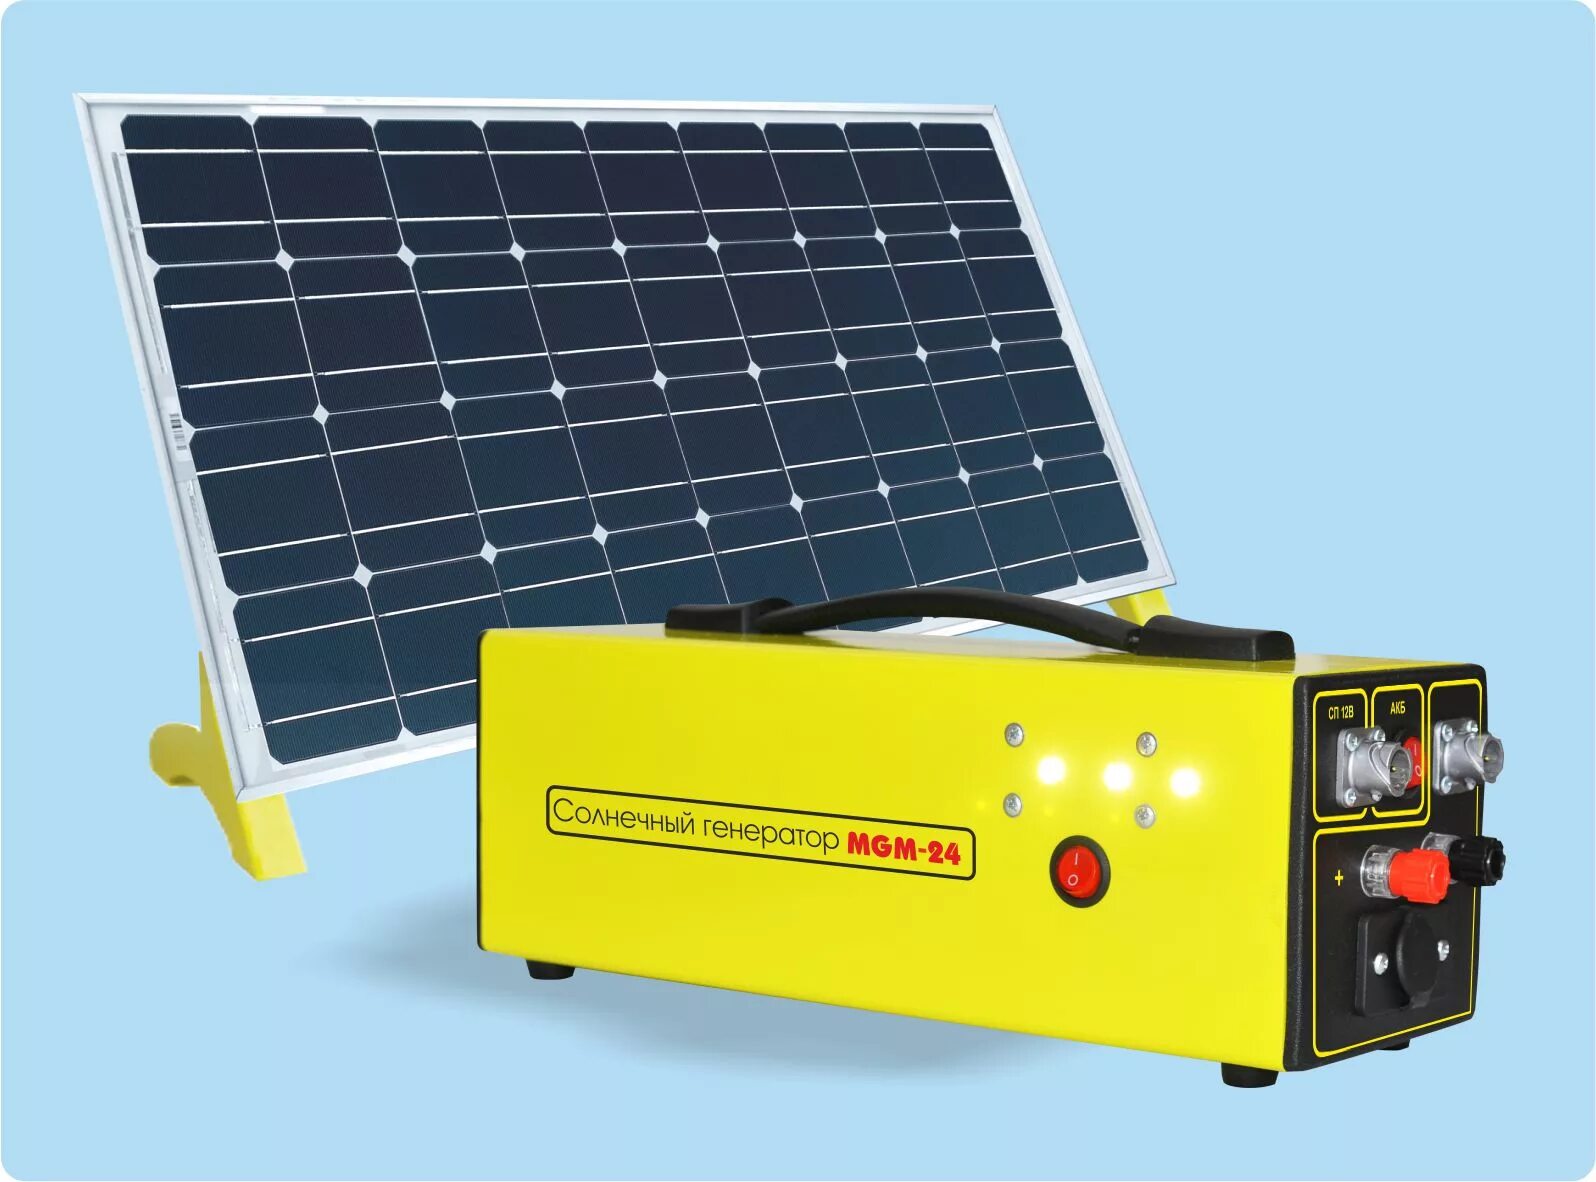 Аккумулятор для солнечных батарей 12 вольт. Солнечная панель 220 вольт. Солнечная электростанция Delta комплект. Солнечный термогенератор. Солнечная панель 1000 Вт 220 вольт.